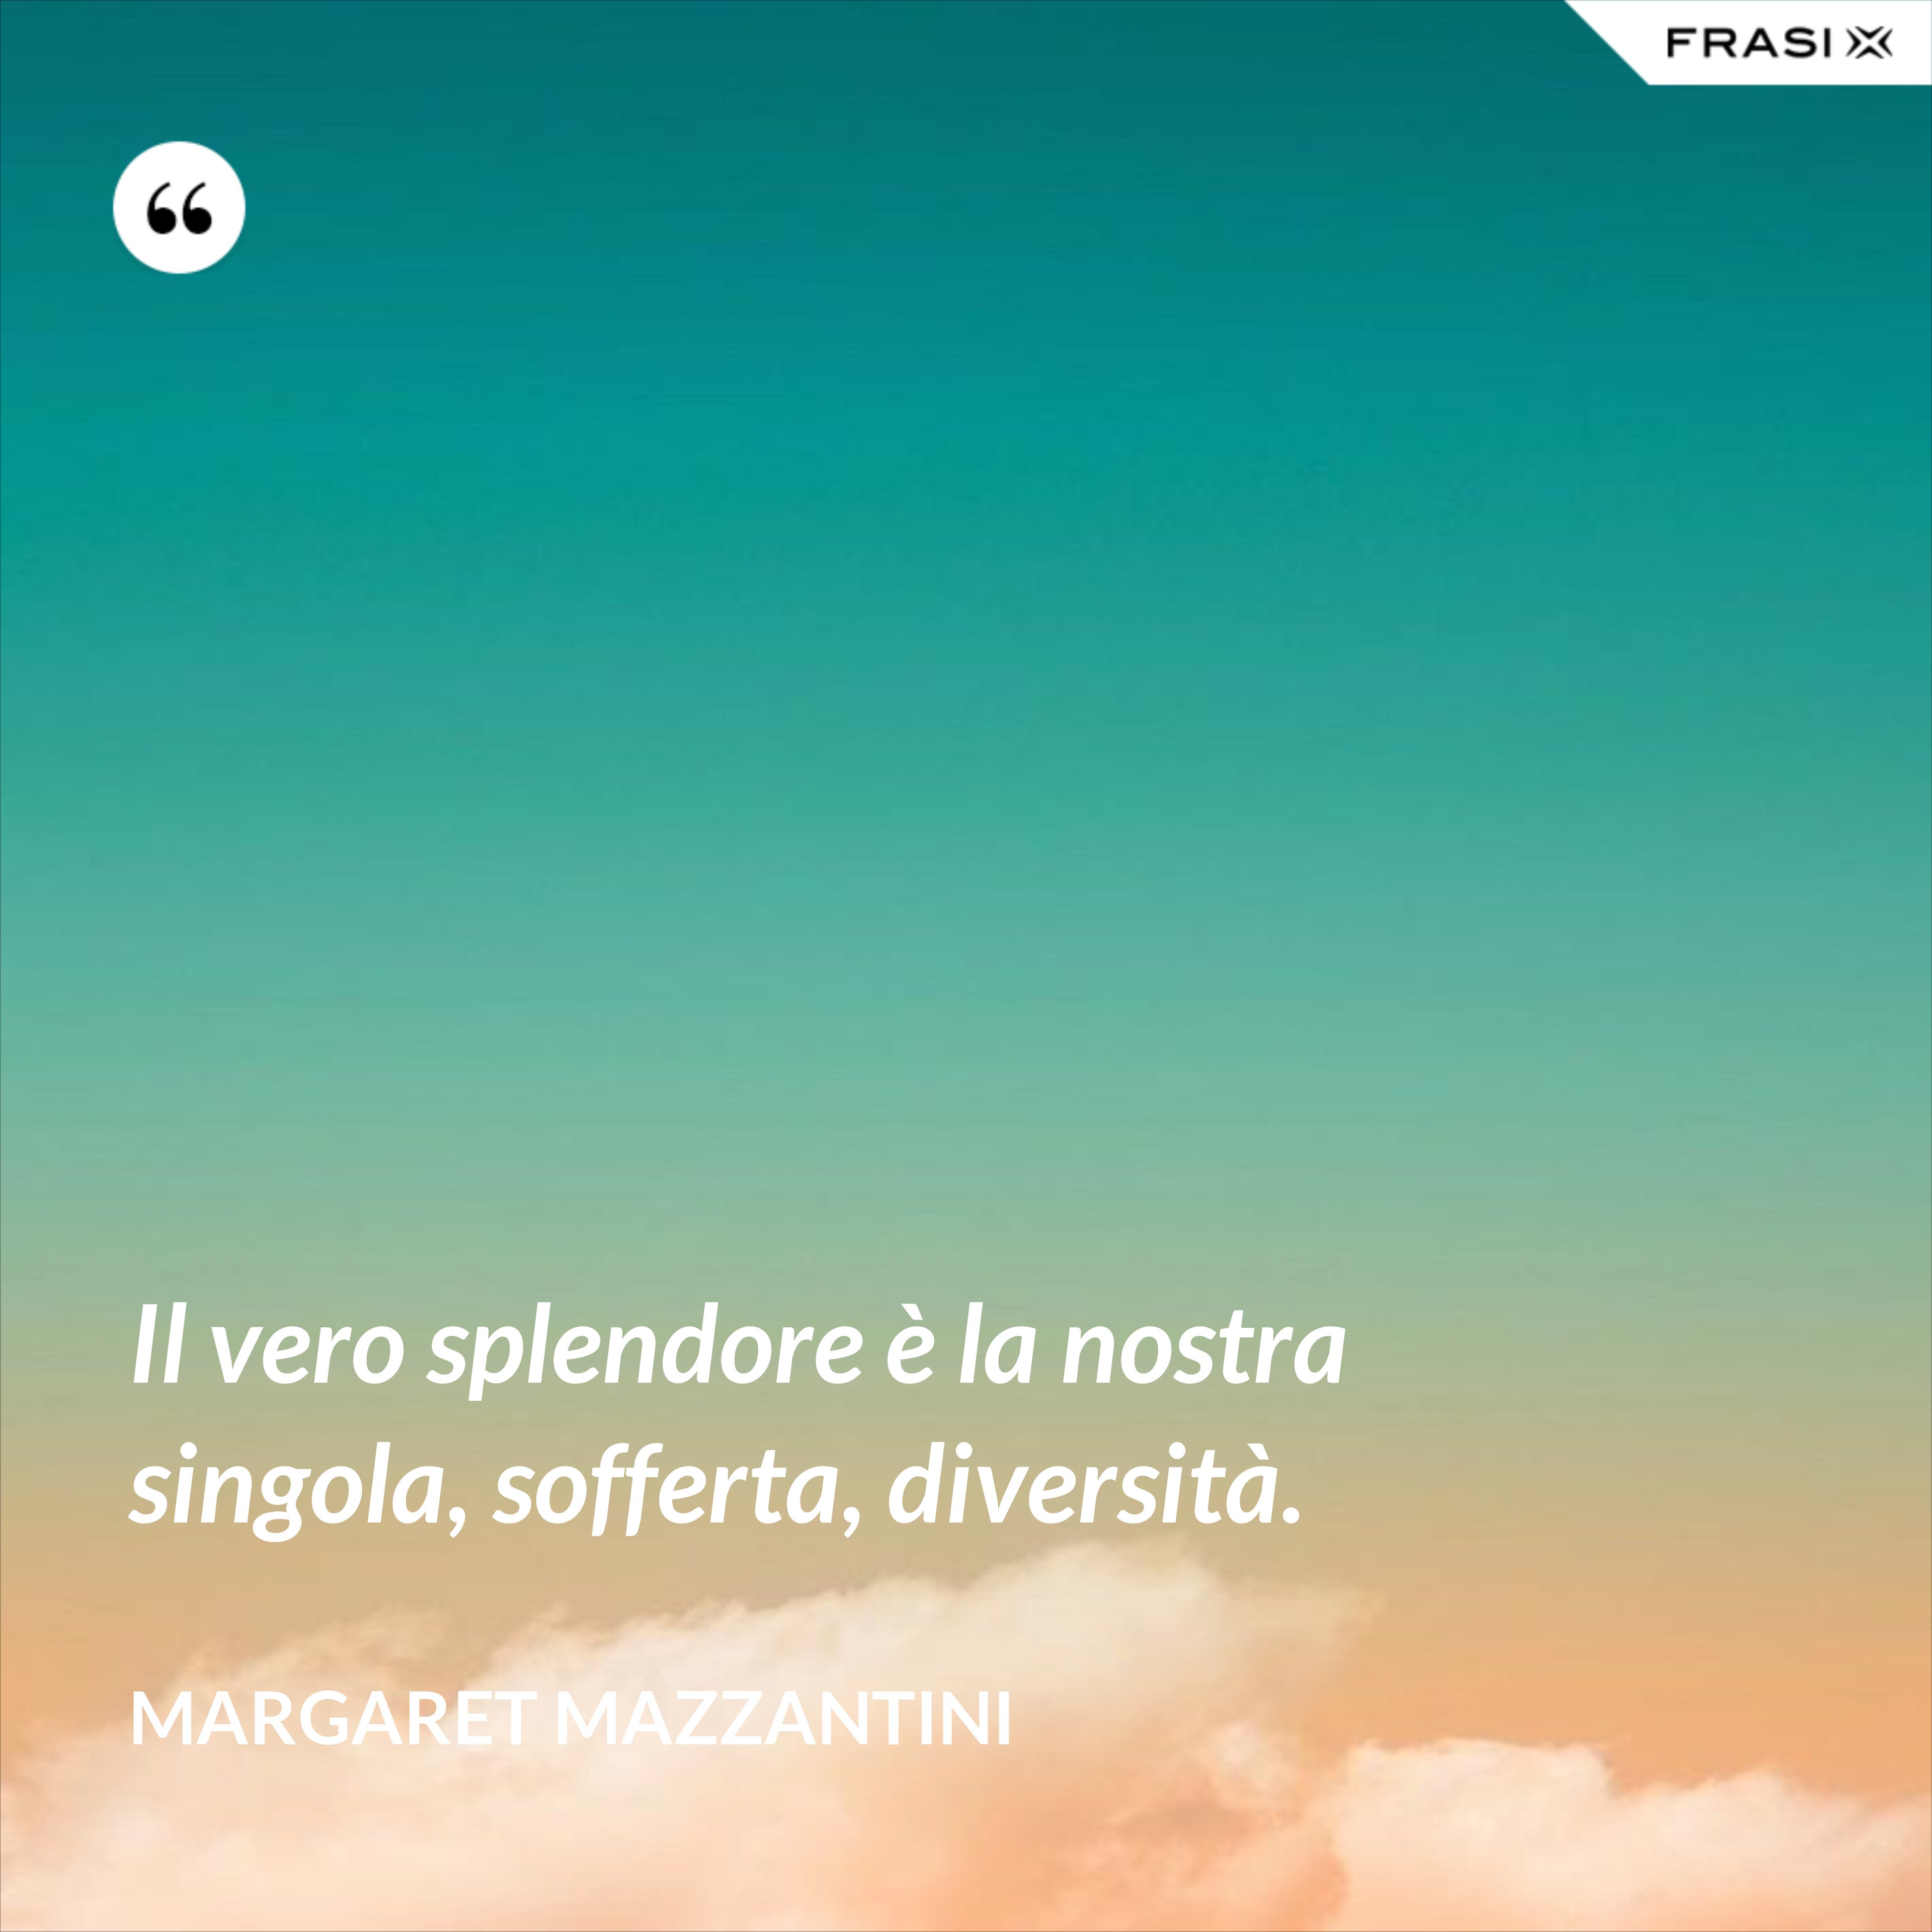 Il vero splendore è la nostra singola, sofferta, diversità. - Margaret Mazzantini